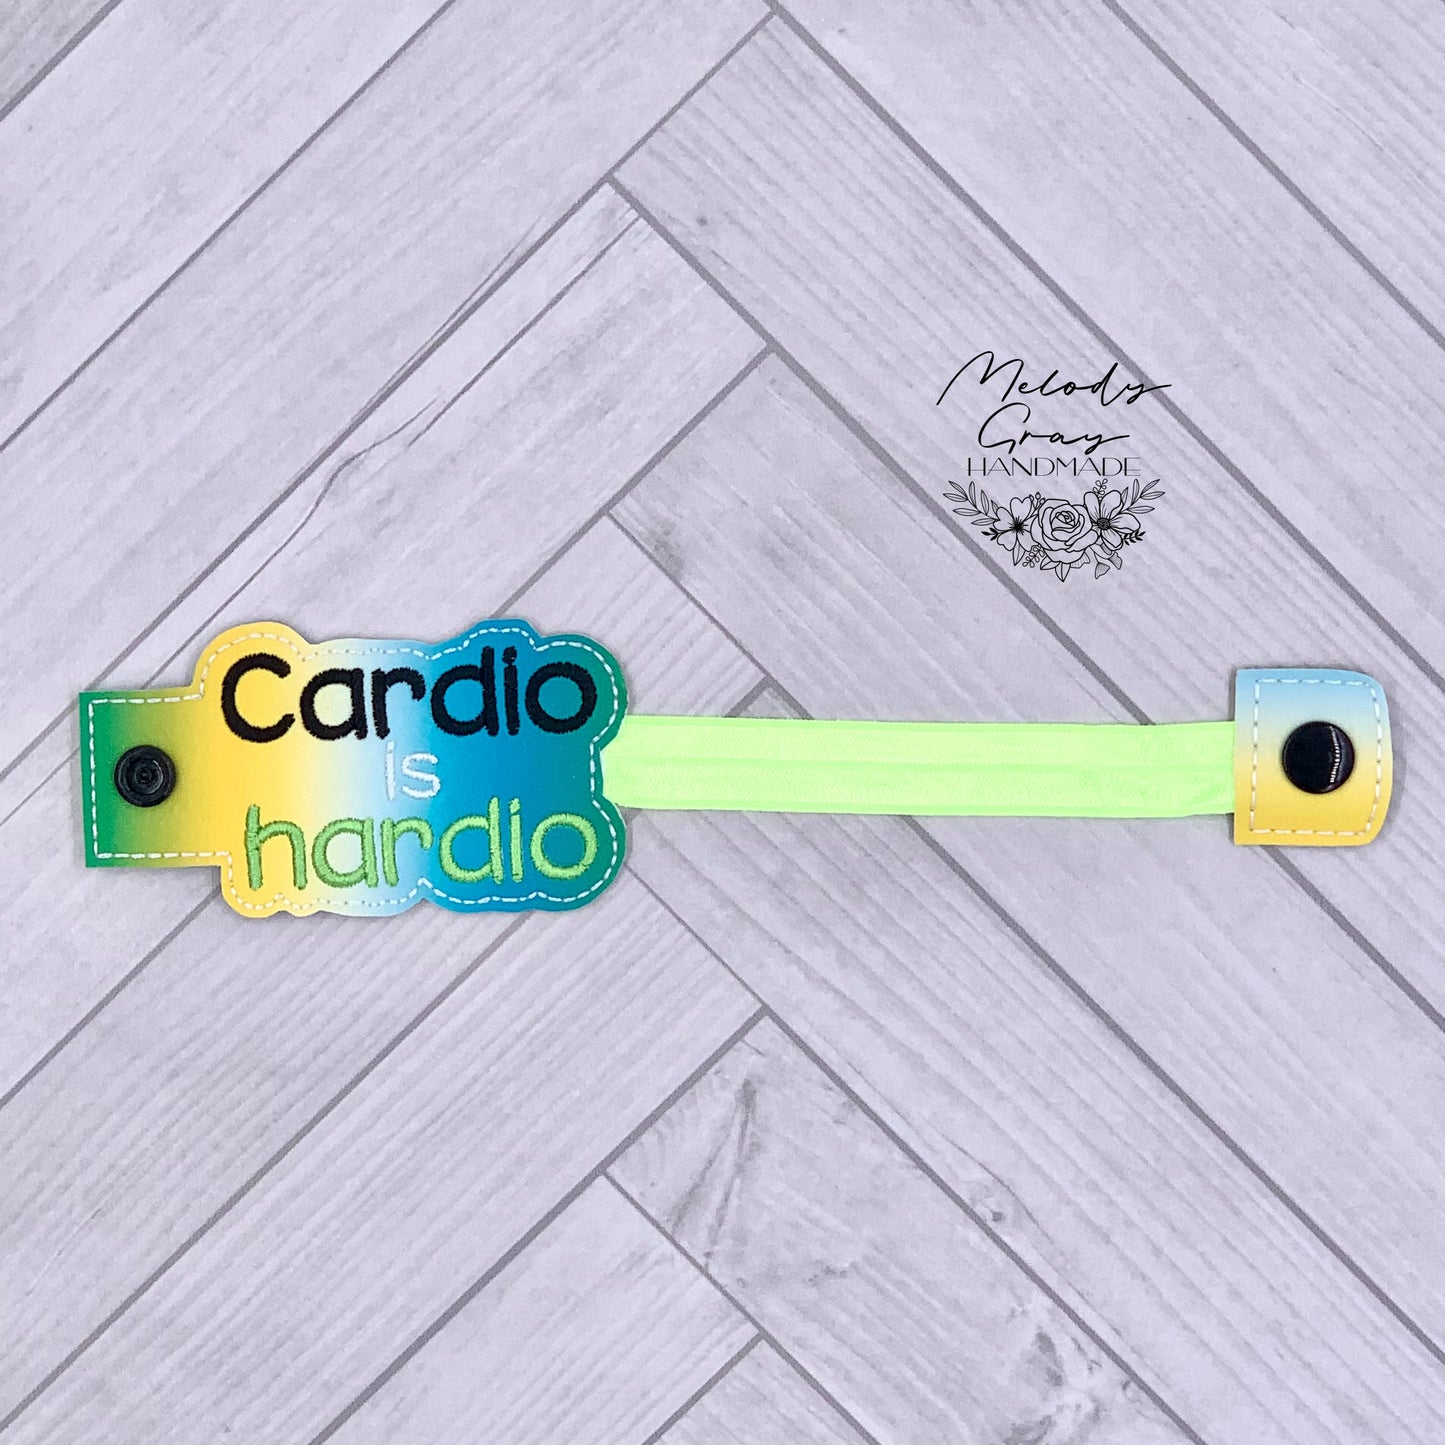 Cardio Is Hardio Bottle Band